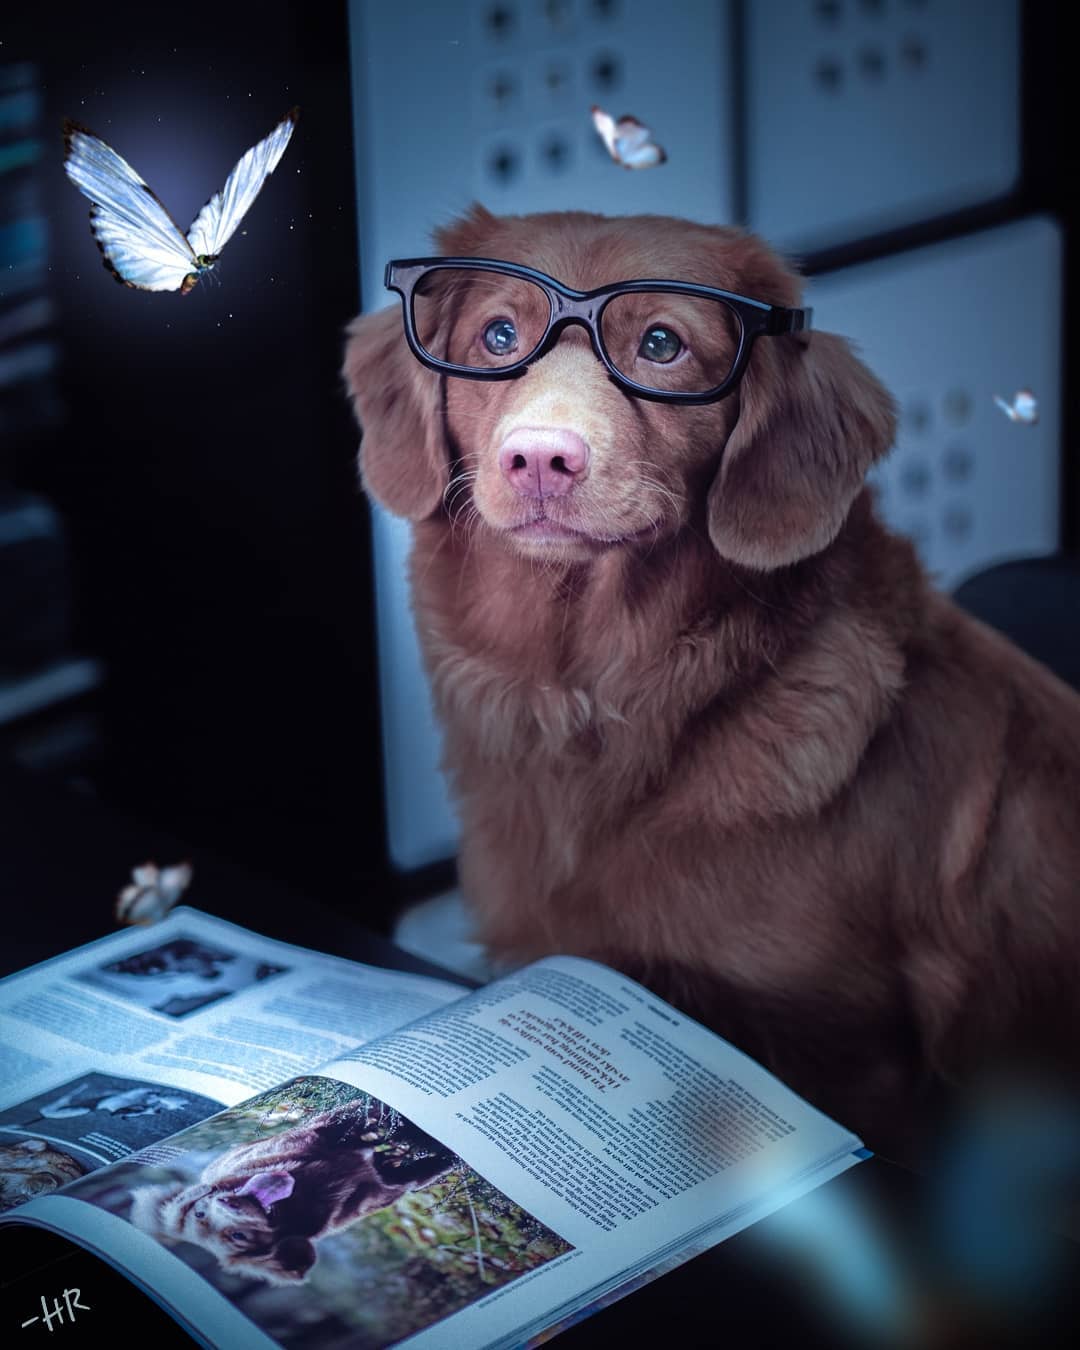 Фото Пес в очках сидит перед открытым журналом про собак, вокруг летают бабочки, by hrdesignz